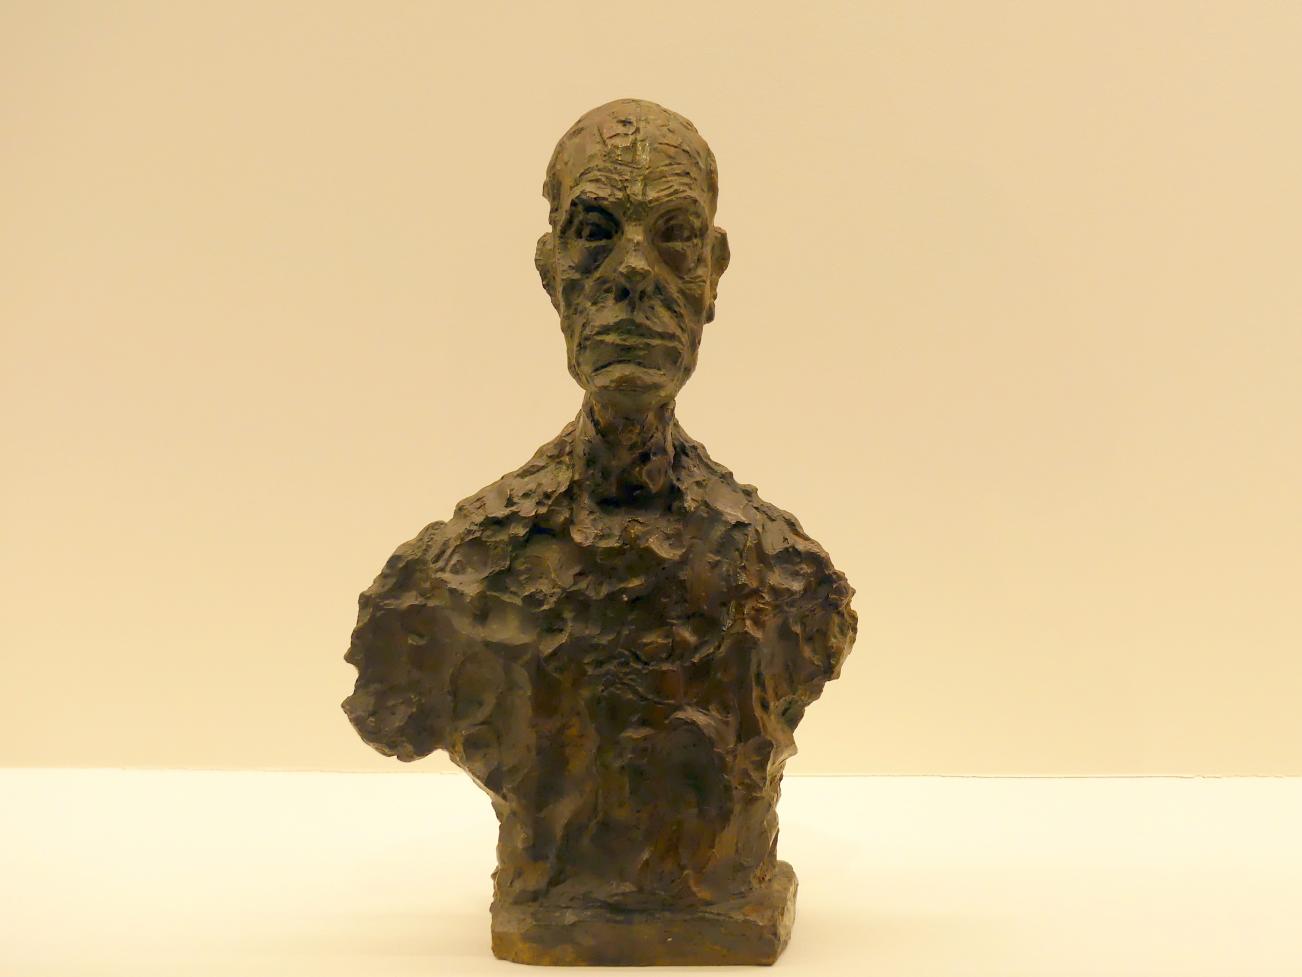 Alberto Giacometti (1914–1965), Büste von Diego, Prag, Nationalgalerie im Messepalast, Ausstellung "Alberto Giacometti" vom 18.07.-01.12.2019, Kleine Skulpturen, 1962